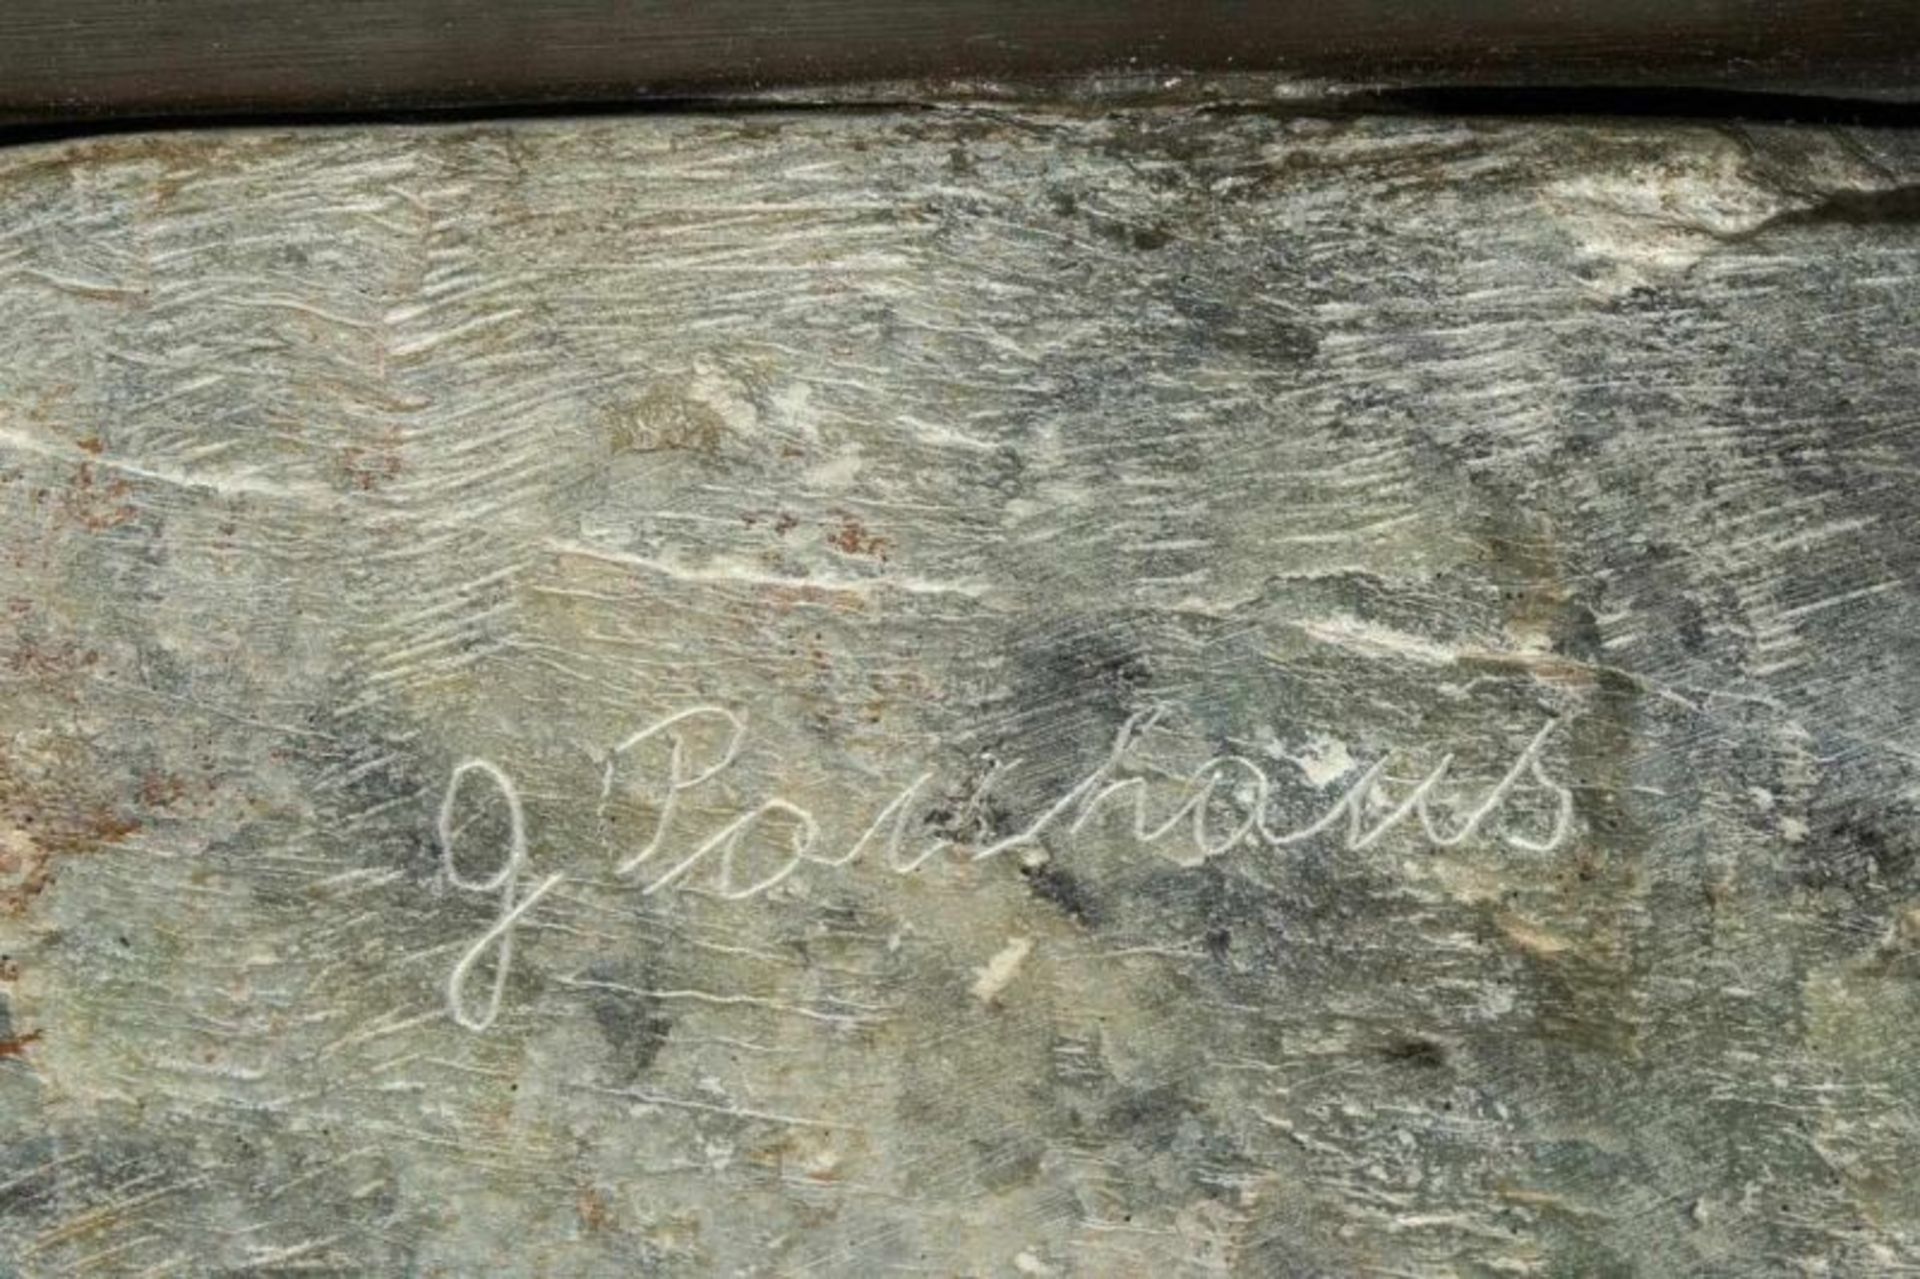 "Pferdekopf" - Specksteinskulptur, signiert G. Panhans, wohl Gabriele Panhans, geb 1928, lebt & - Image 5 of 6